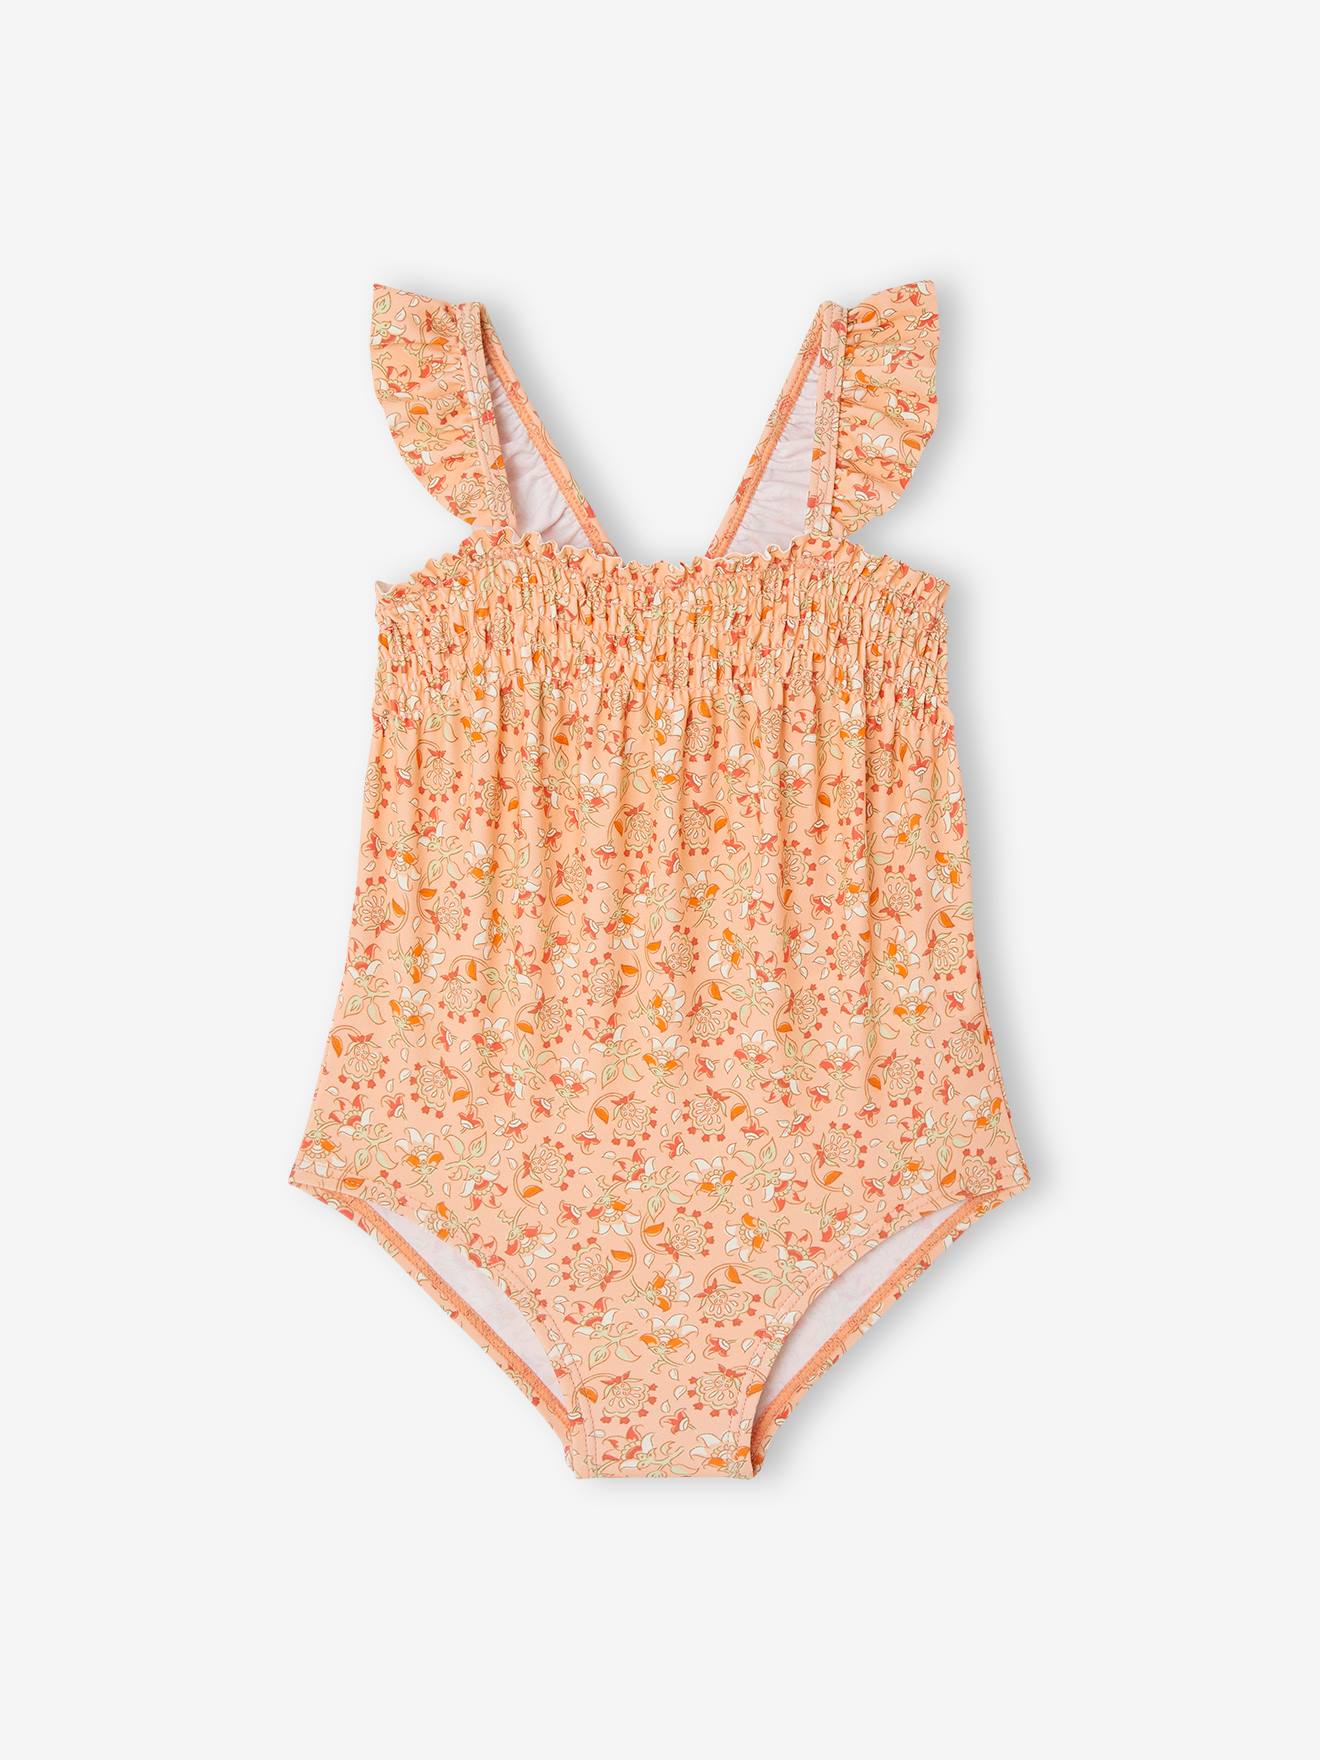 maillot de bain 1 pièce bébé fille fleurs abricot